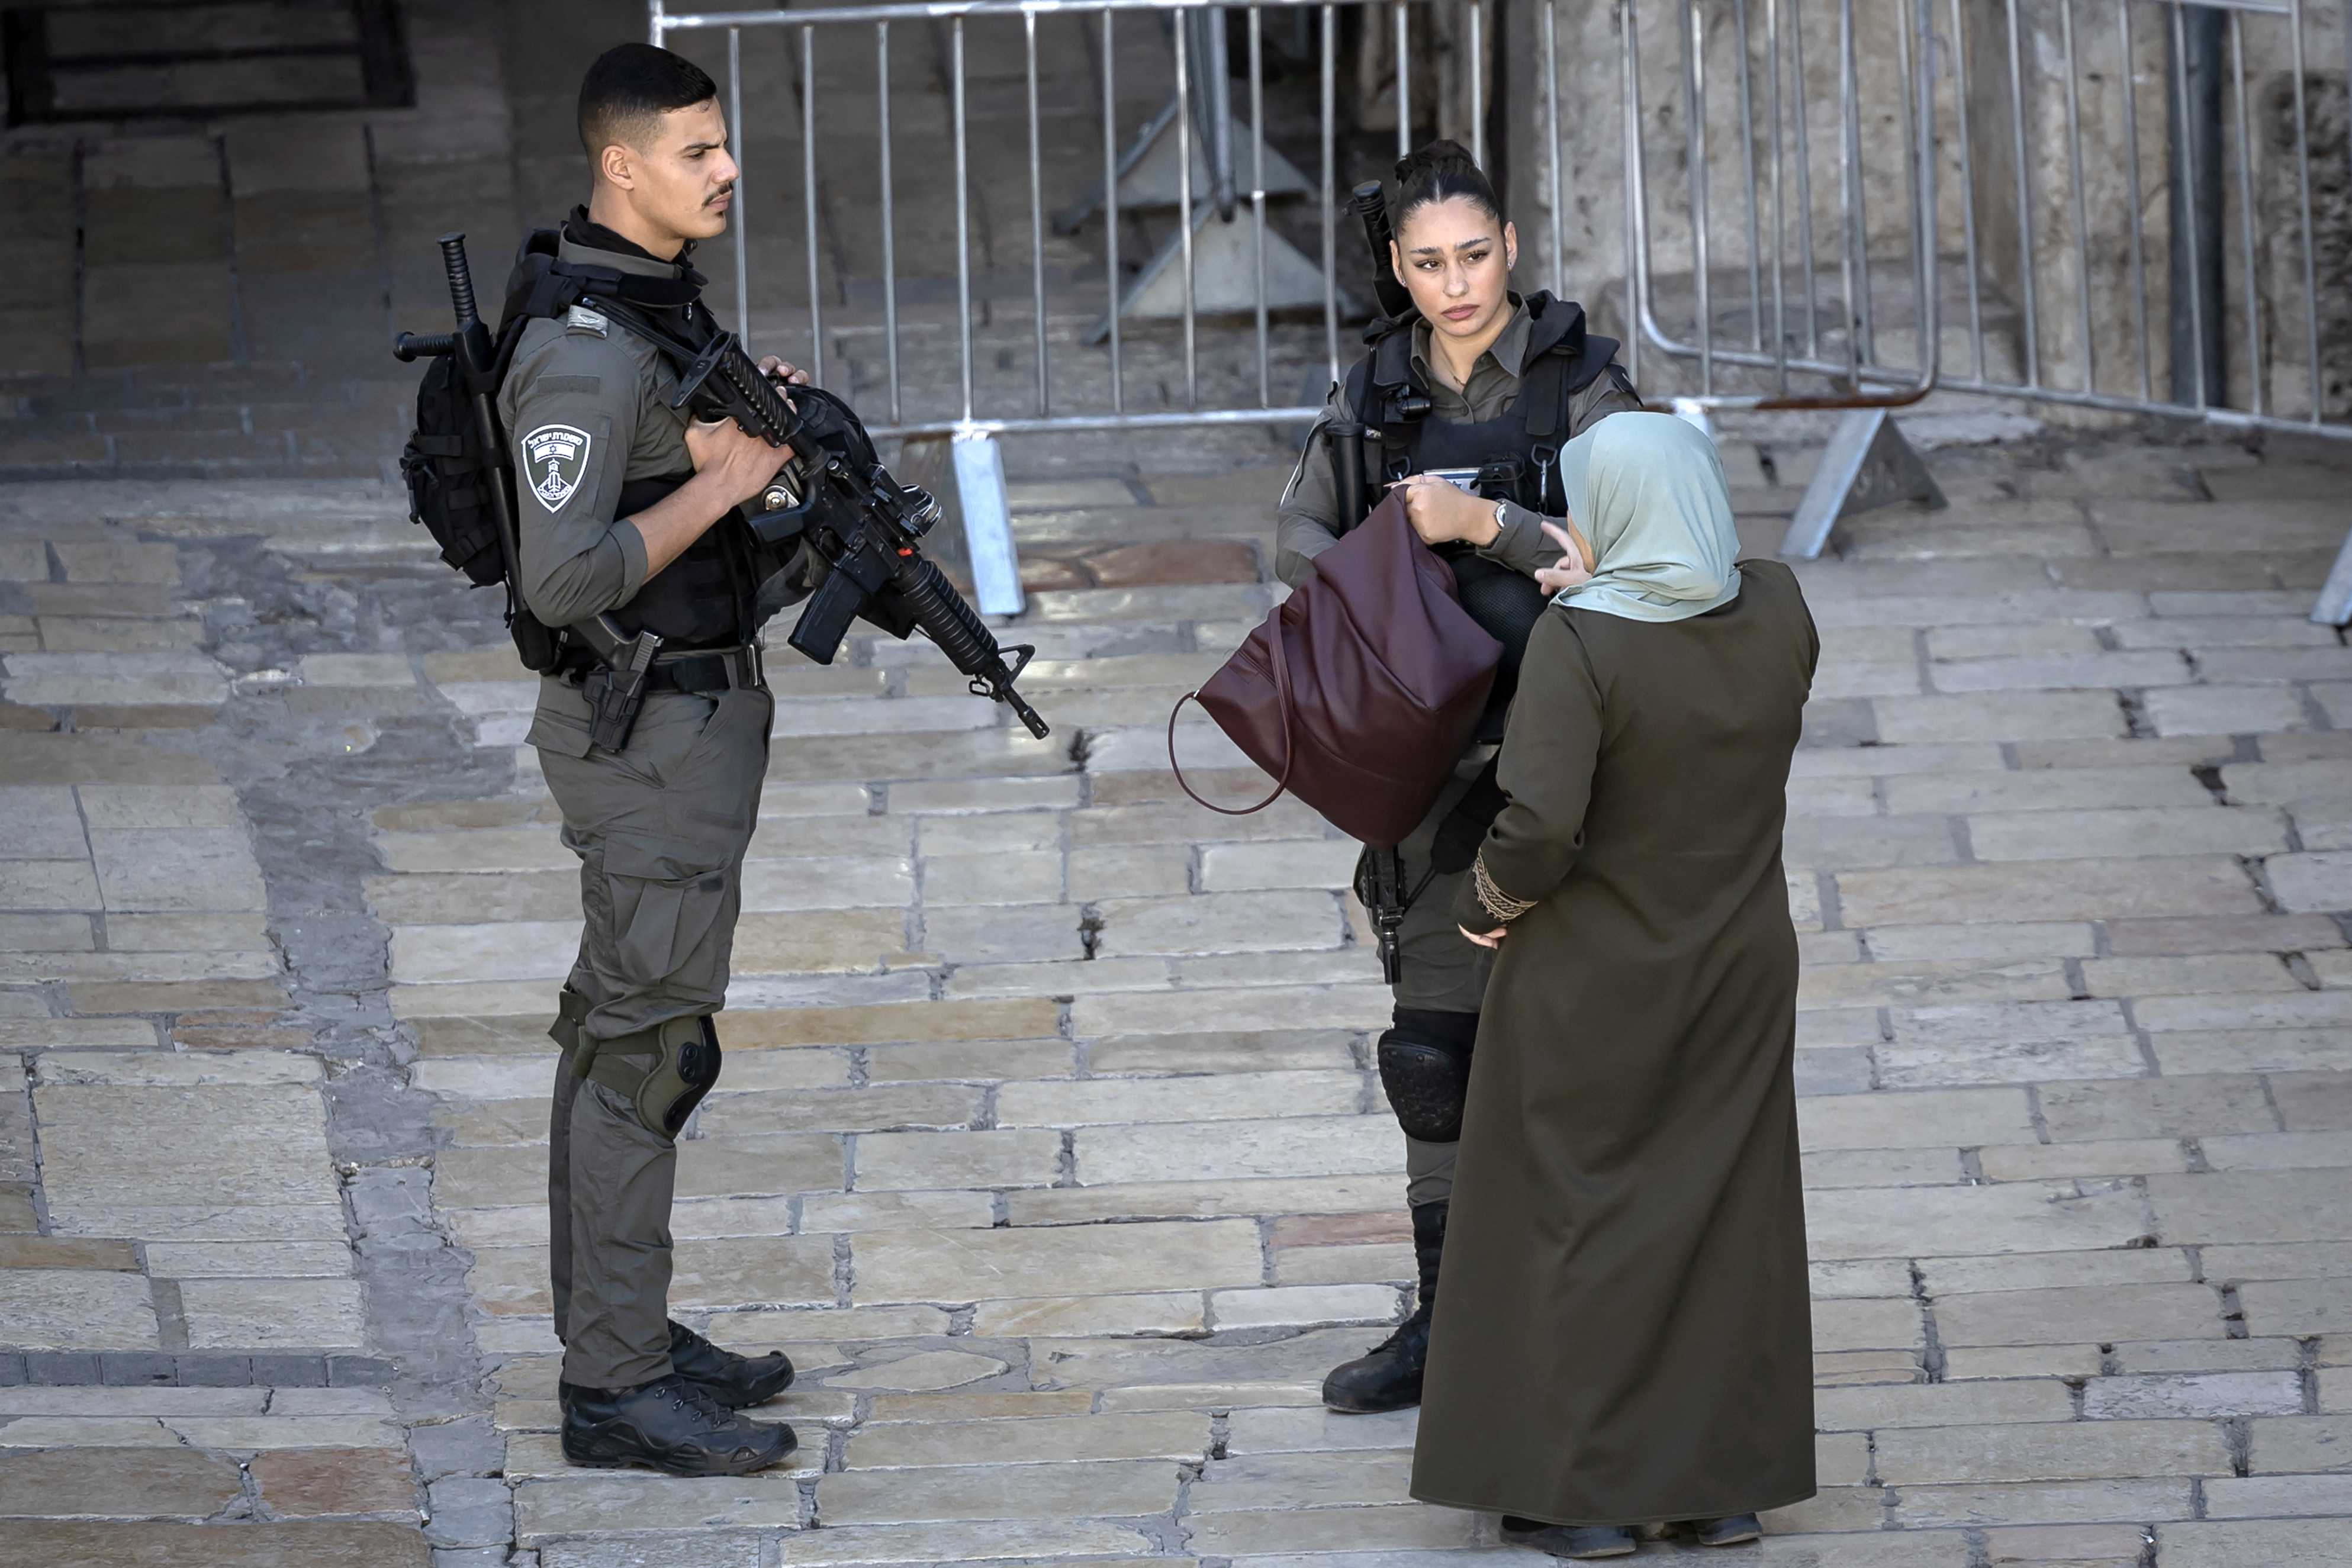 Uma oficial de segurança israelense verifica a bolsa de uma mulher palestina na entrada do Portão de Damasco depois que uma componente das forças de segurança israelenses foi ''gravemente'' ferida em um ataque com faca na área (Créditos: Fadel Senna / AFP)